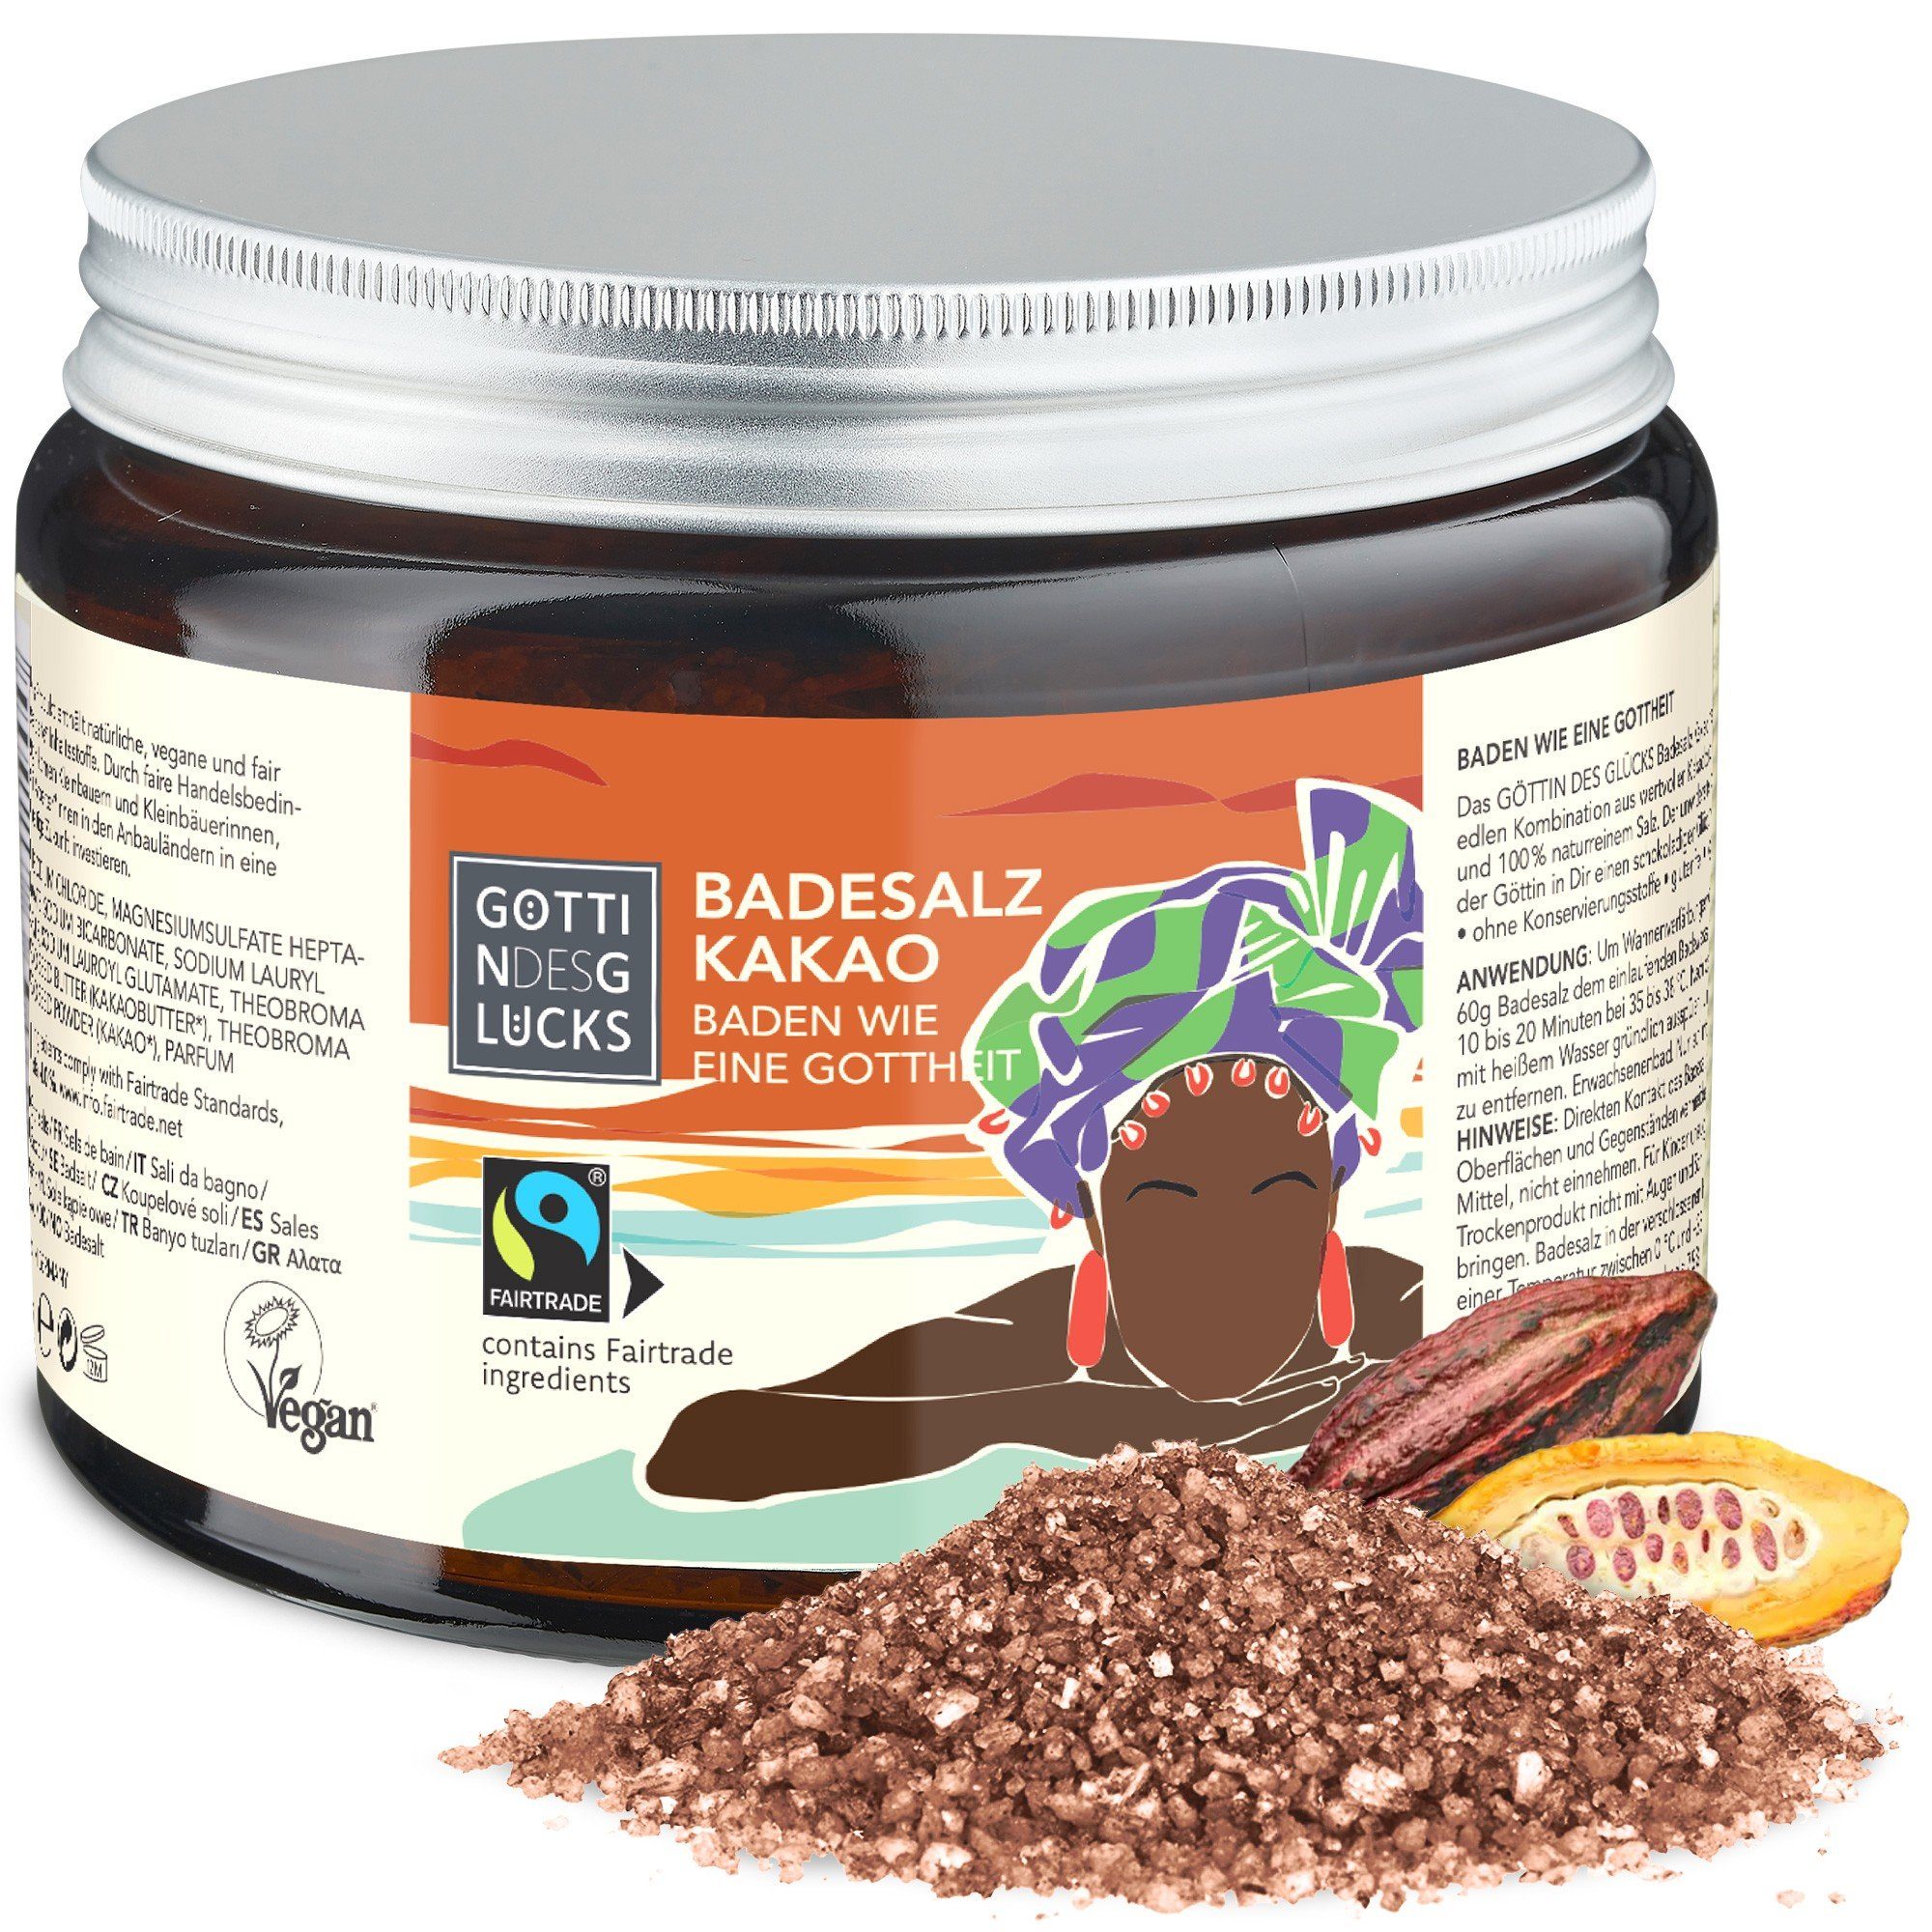 Göttin des Glücks Badesalz GÖTTIN DES GLÜCKS Badesalz Kakao 450 g, für ein intensives Badeerlebnis, 1-tlg., mit fair gehandelten Inhaltsstoffen